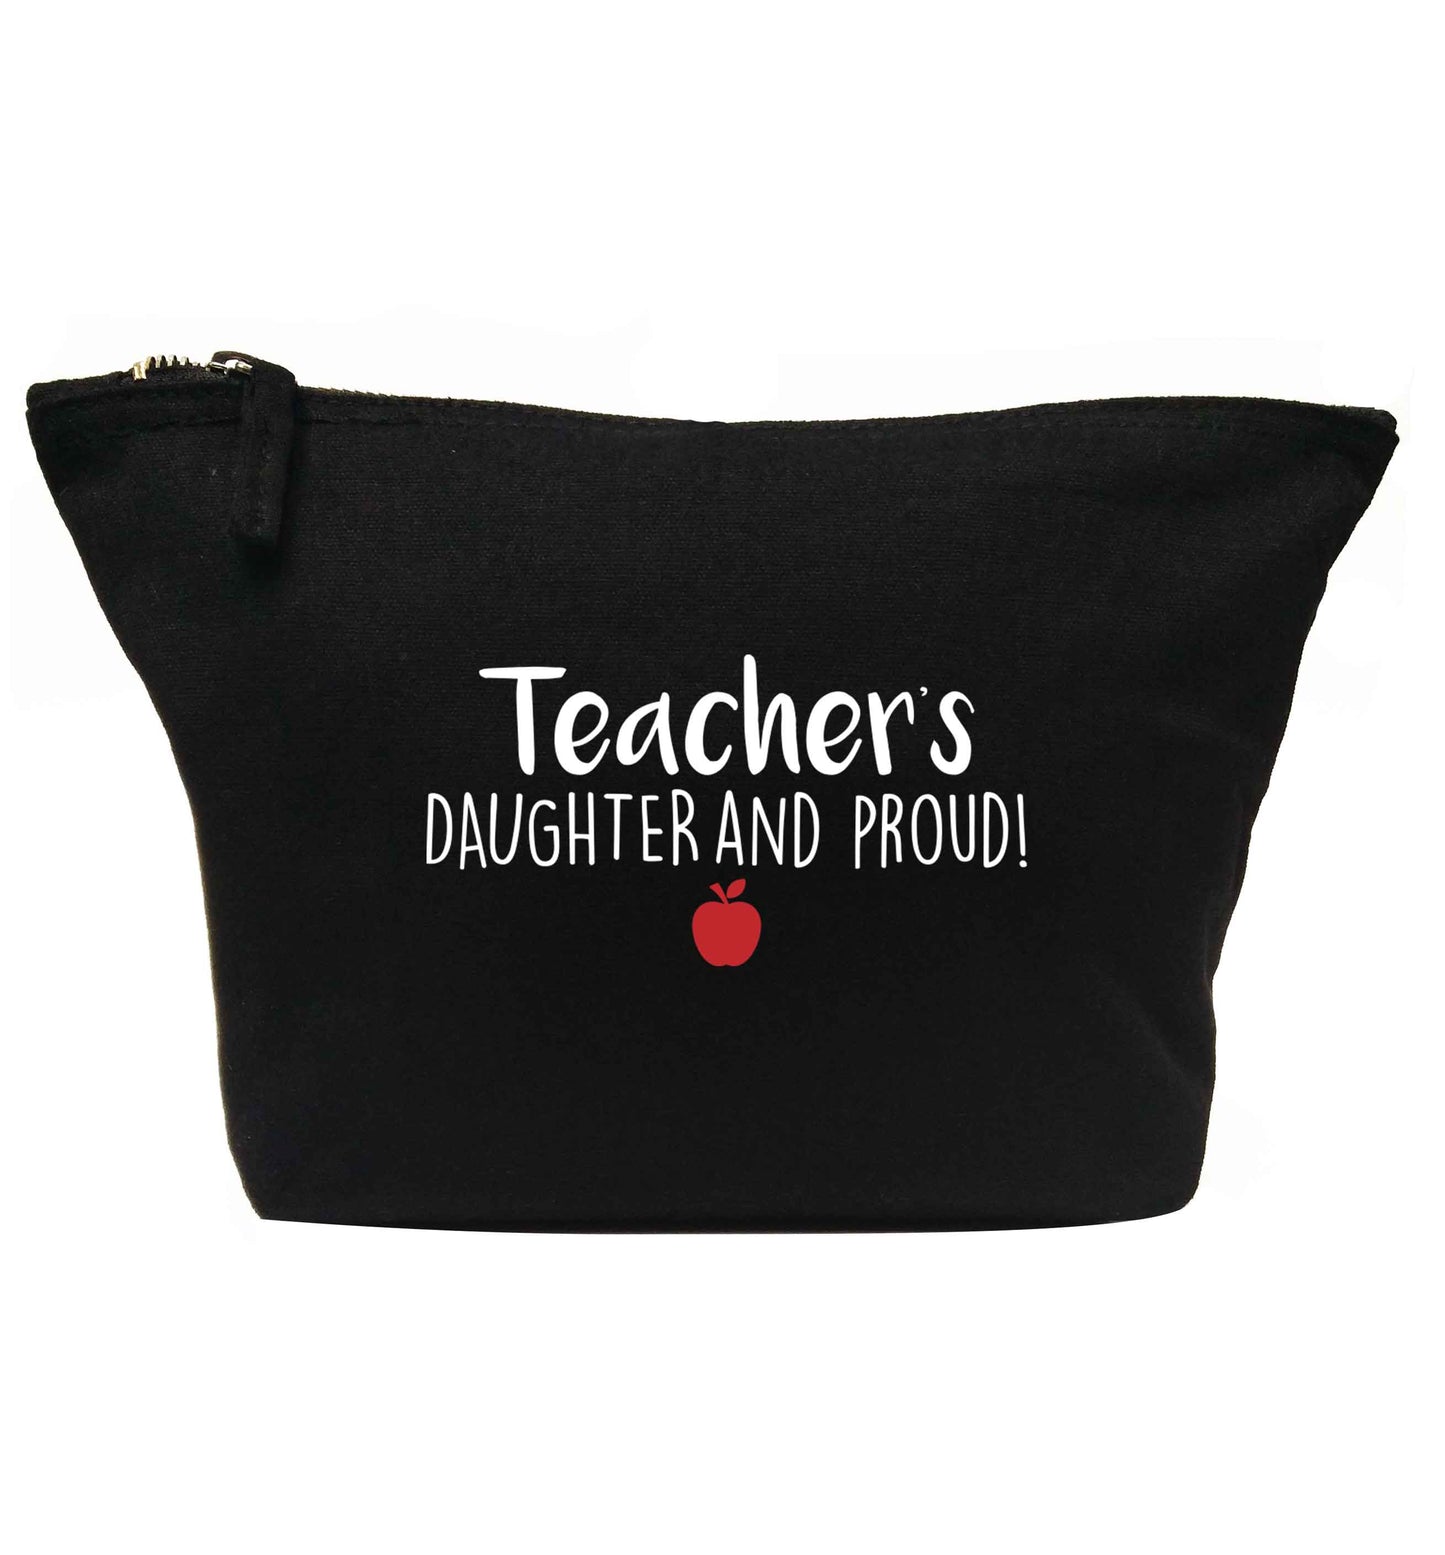 Teachers daughter and proud | Makeup / wash bag